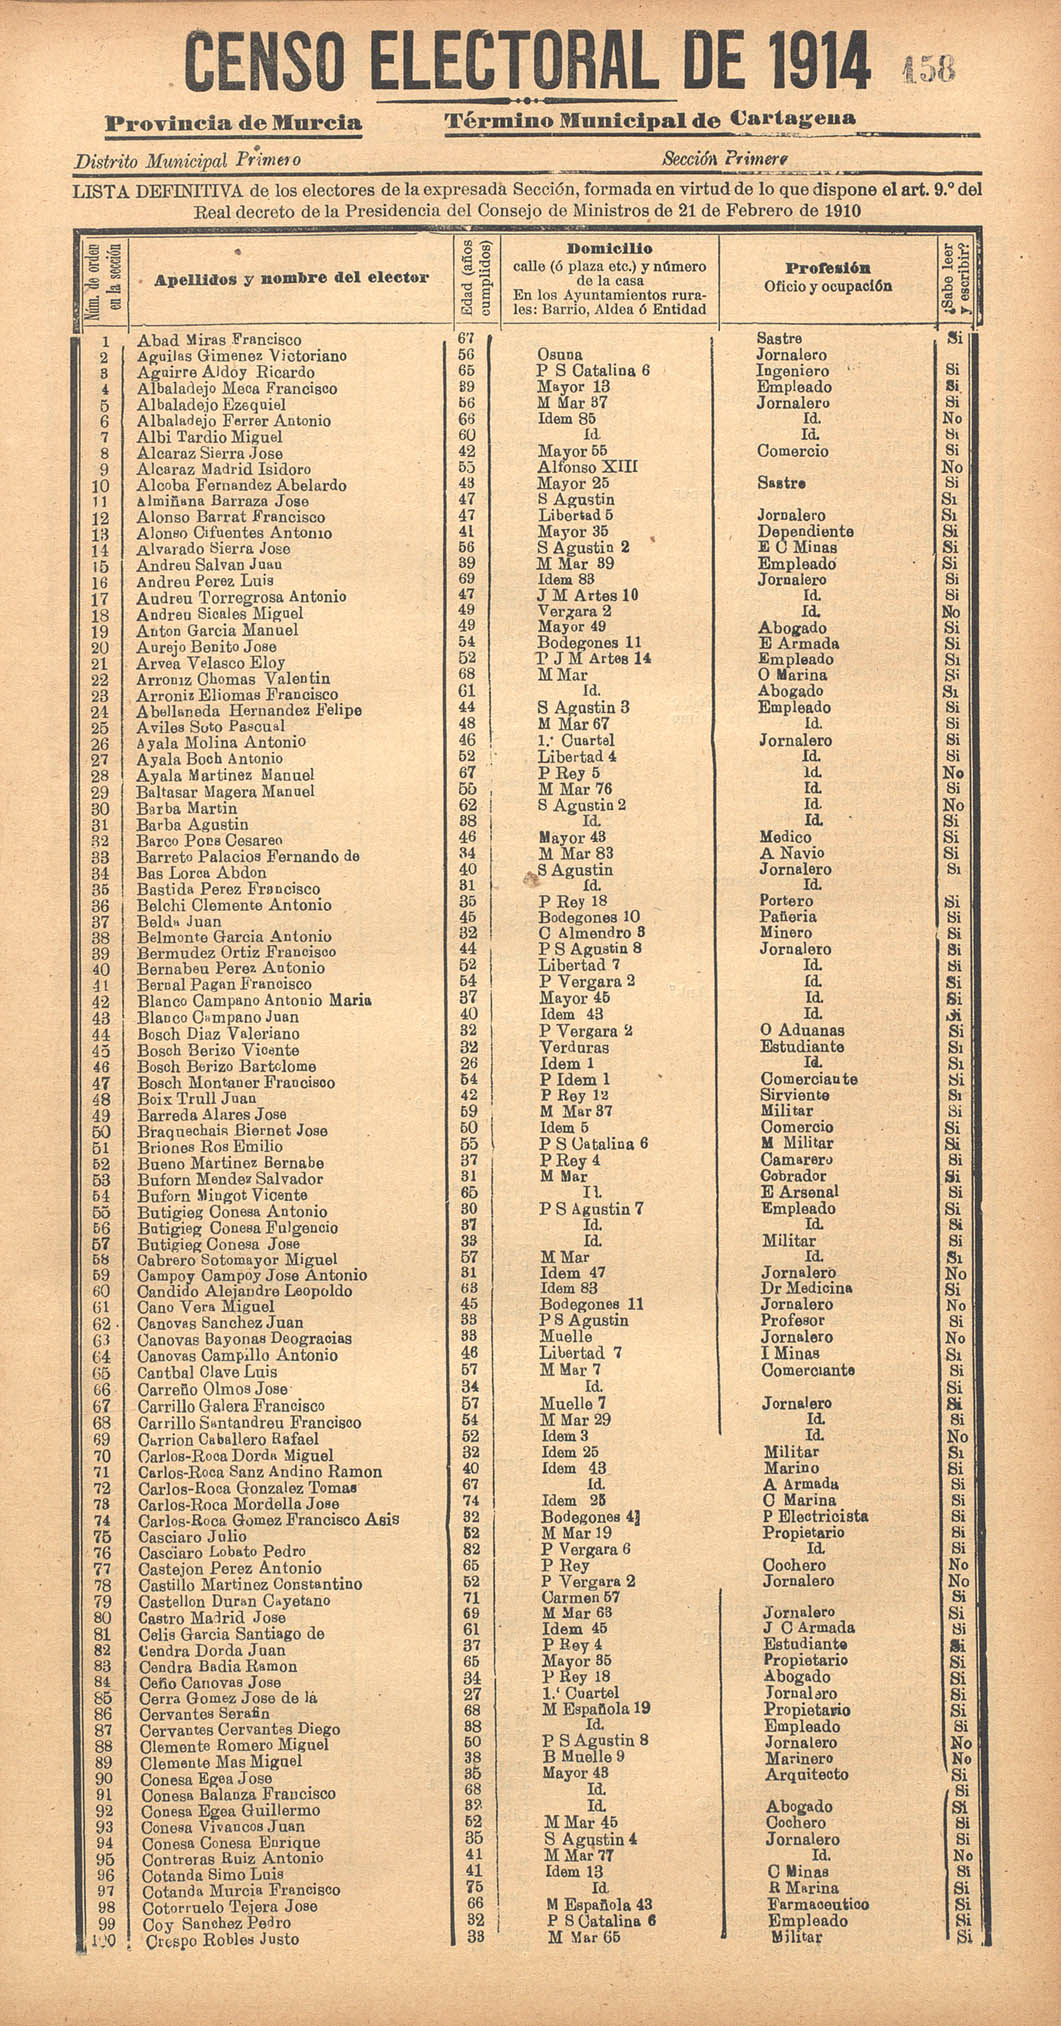 Censo electoral provincial de 1914. Listas definitivas: Cartagena.